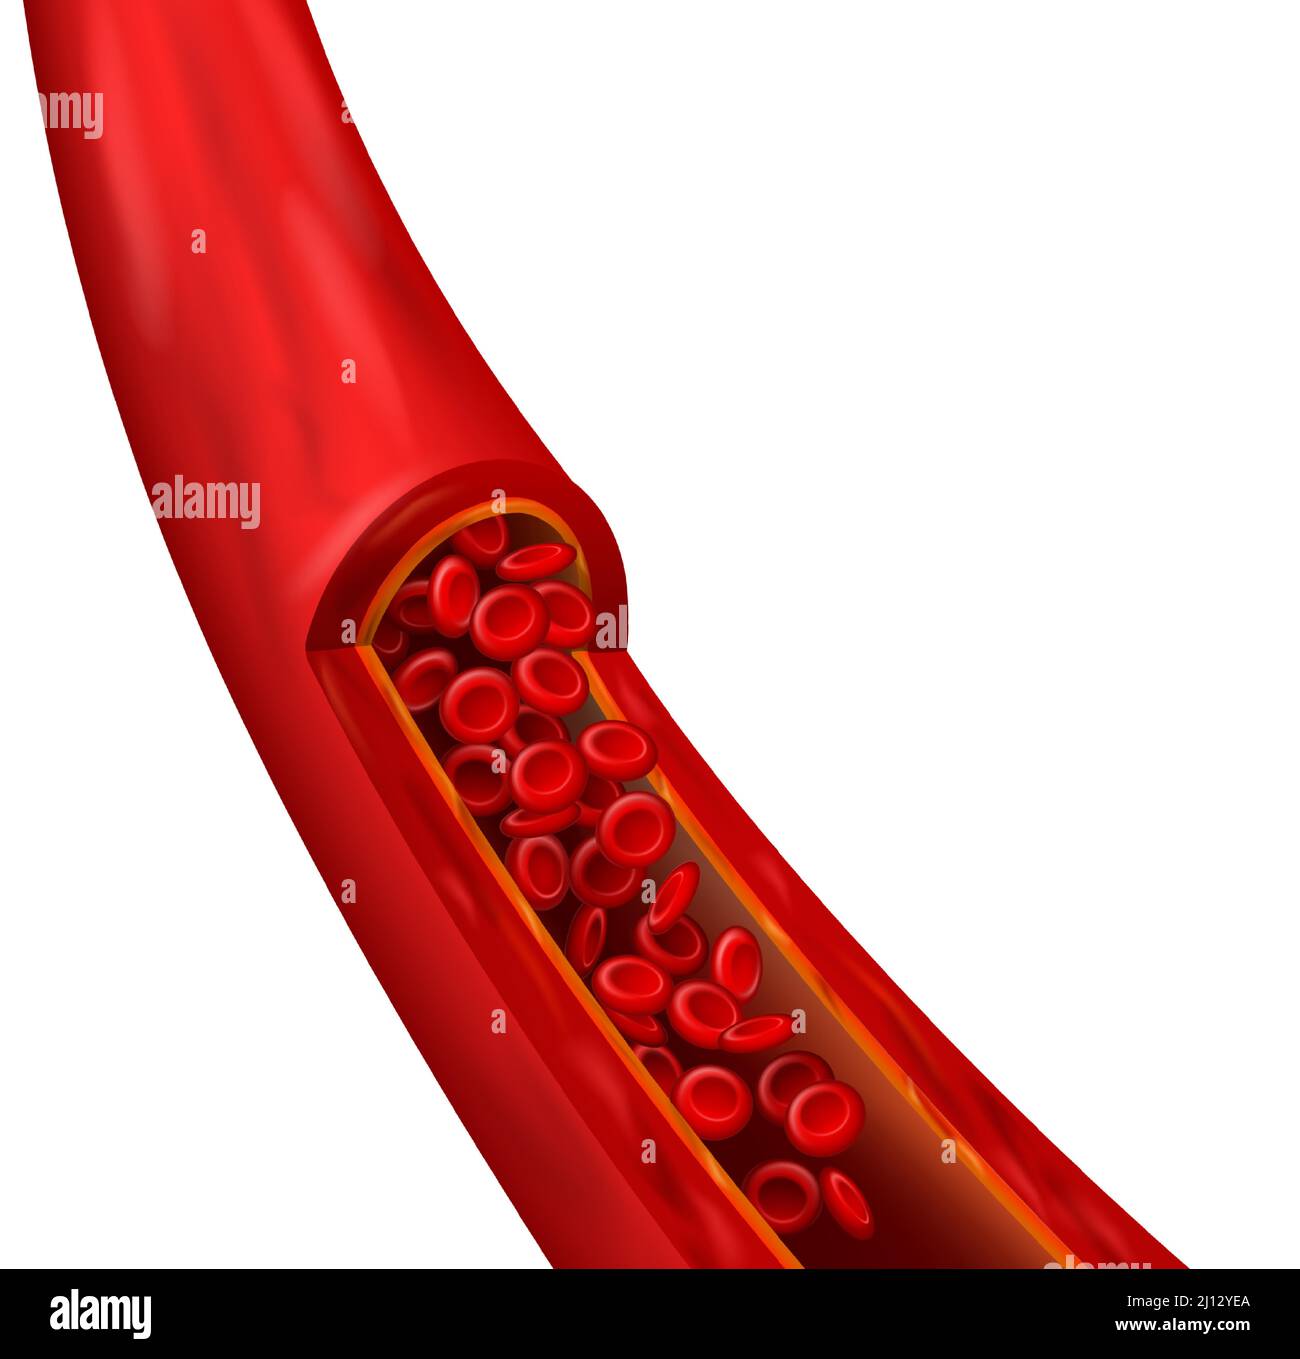 Realistisches Element des Blutgefäßes. Kardiovaskuläre Struktur mit detaillierten roten Zellen. Mikroskopisch kleine Erythrozyten in Bewegung Stock Vektor